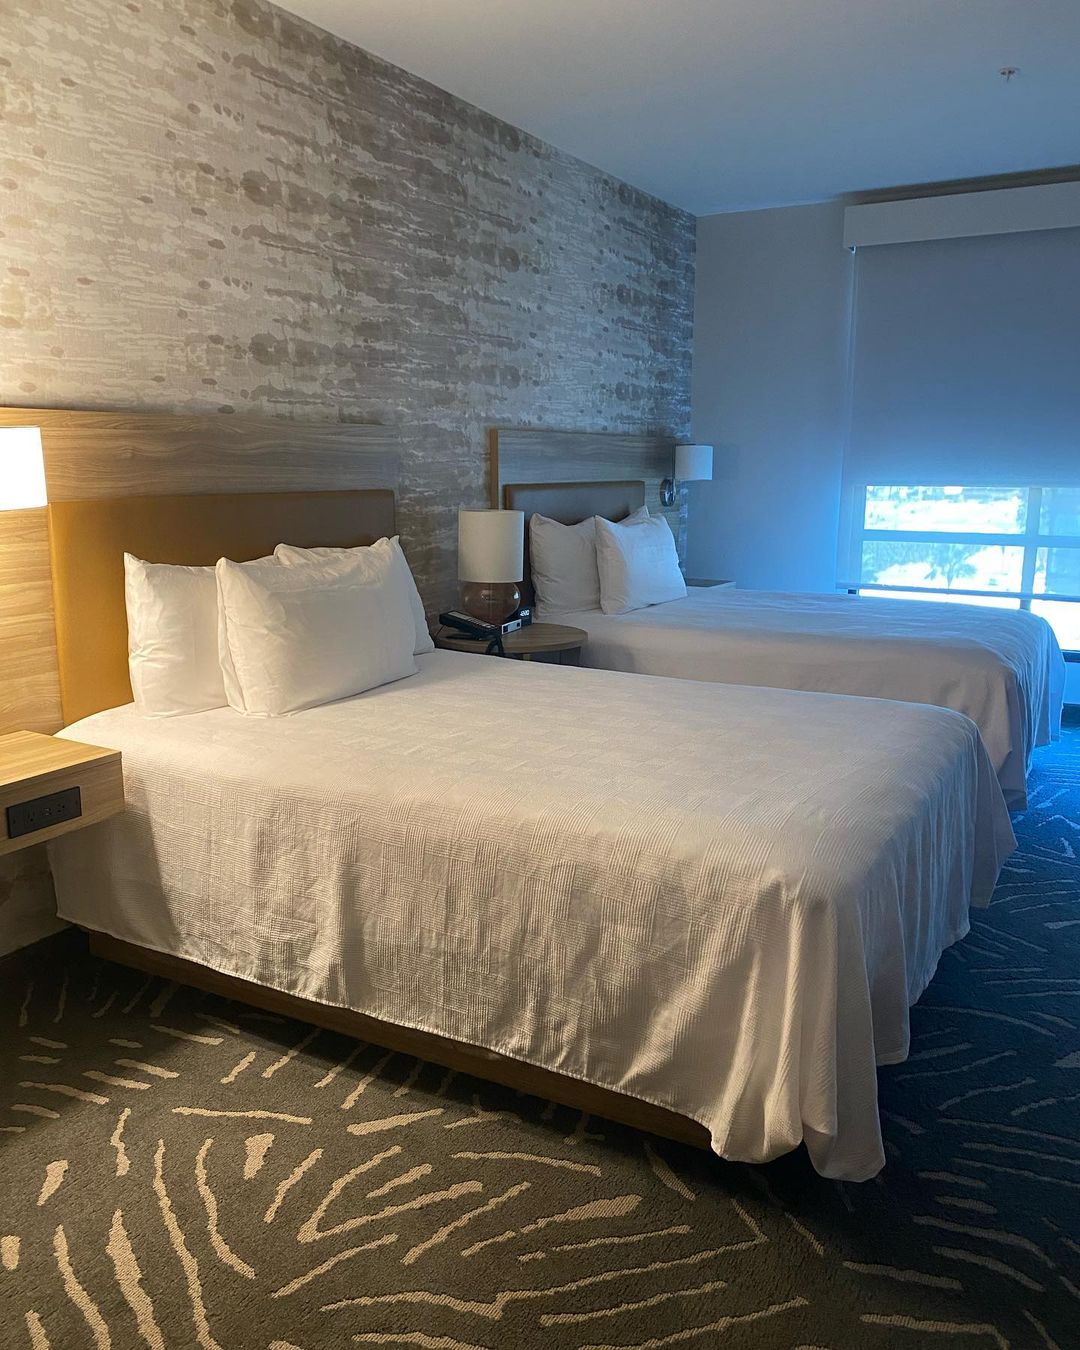 ルーム アット ホーム 2 スイーツは、ディズニーランド カリフォルニアに近い最高のホテルの 1 つです。